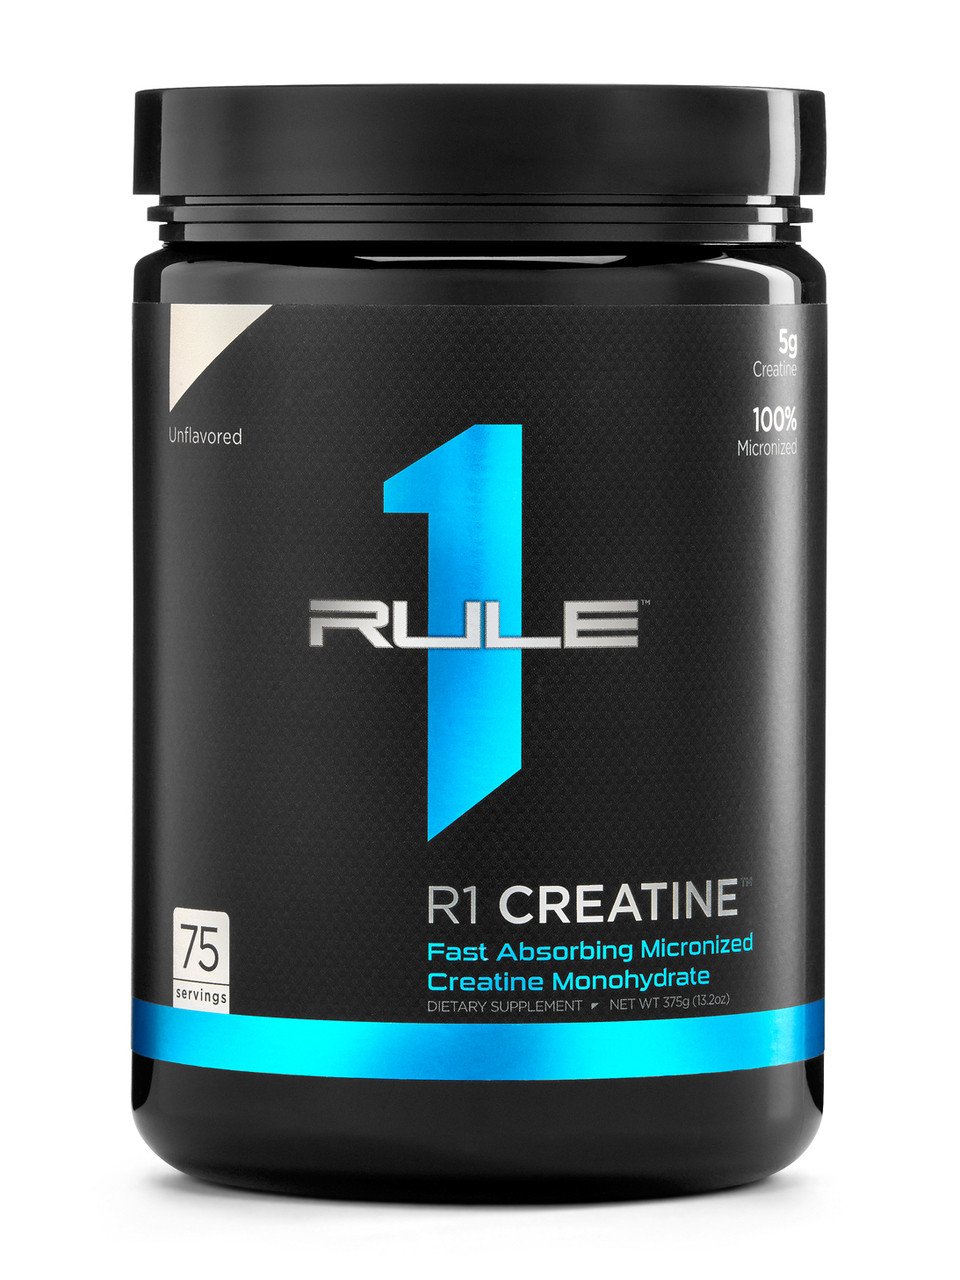 R1 Creatine 375 г - Unflavored,  мл, Rule One Proteins. Креатин. Набор массы Энергия и выносливость Увеличение силы 